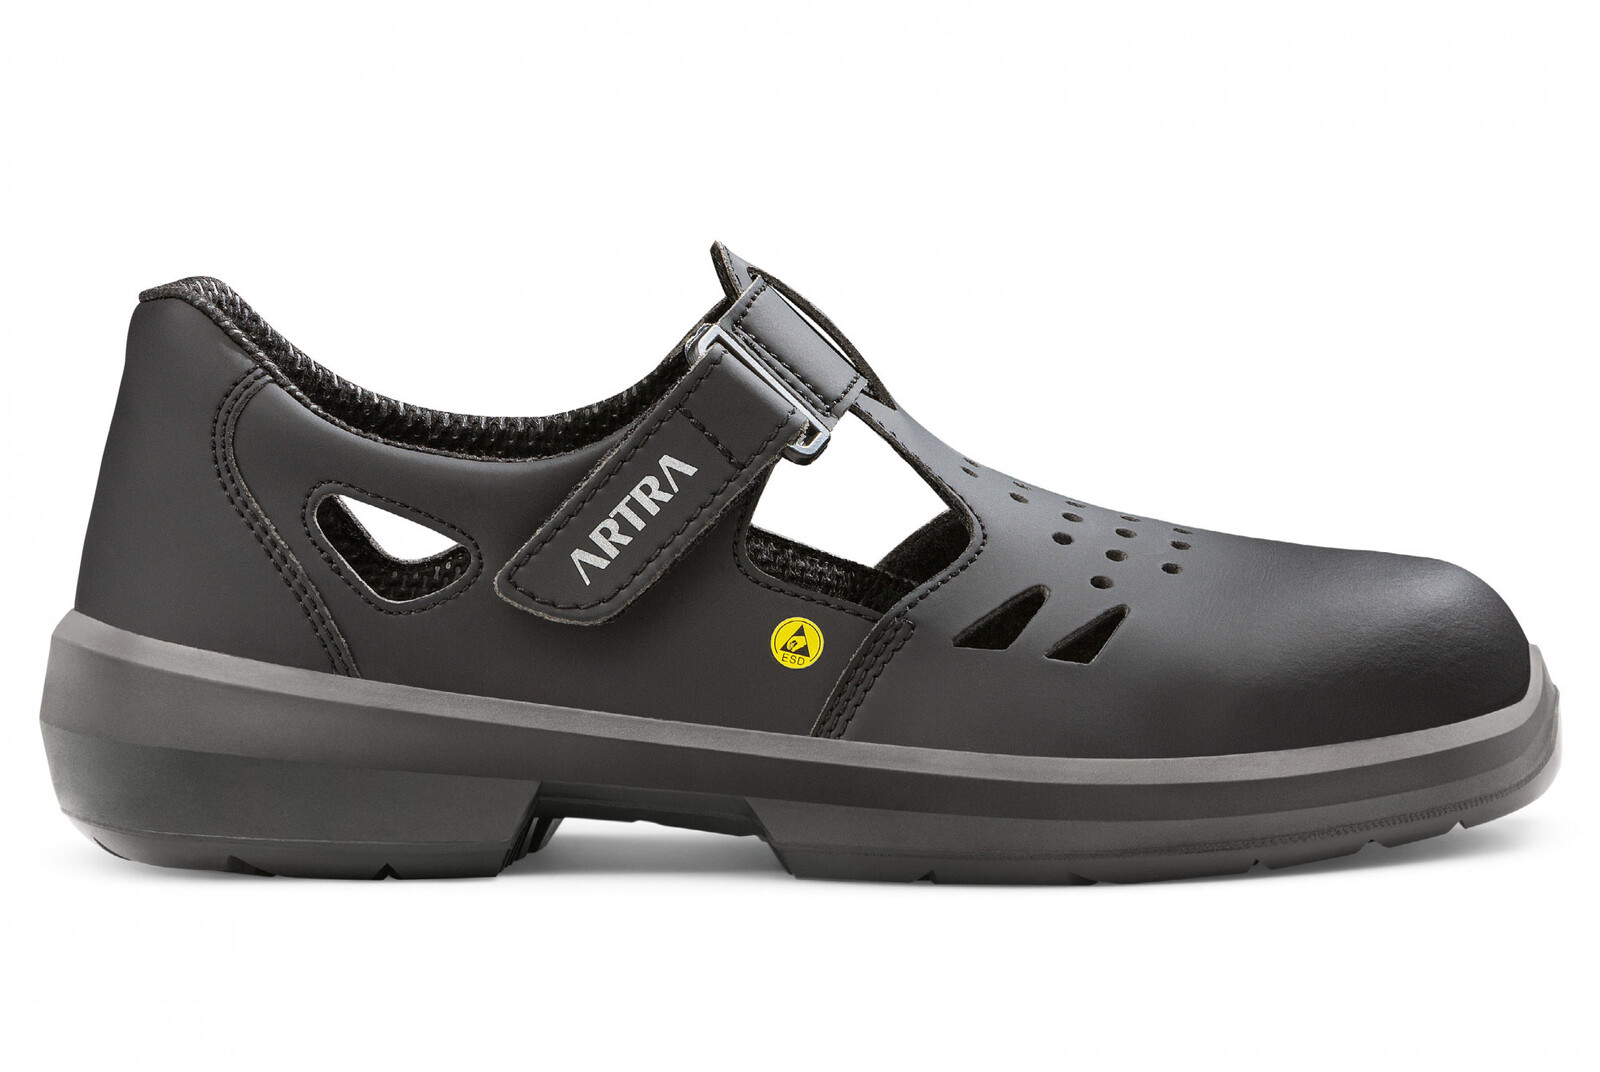 Bezpečnostné sandále Artra Armen 9008 6760 S1P SRC ESD MF - veľkosť: 35, farba: čierna